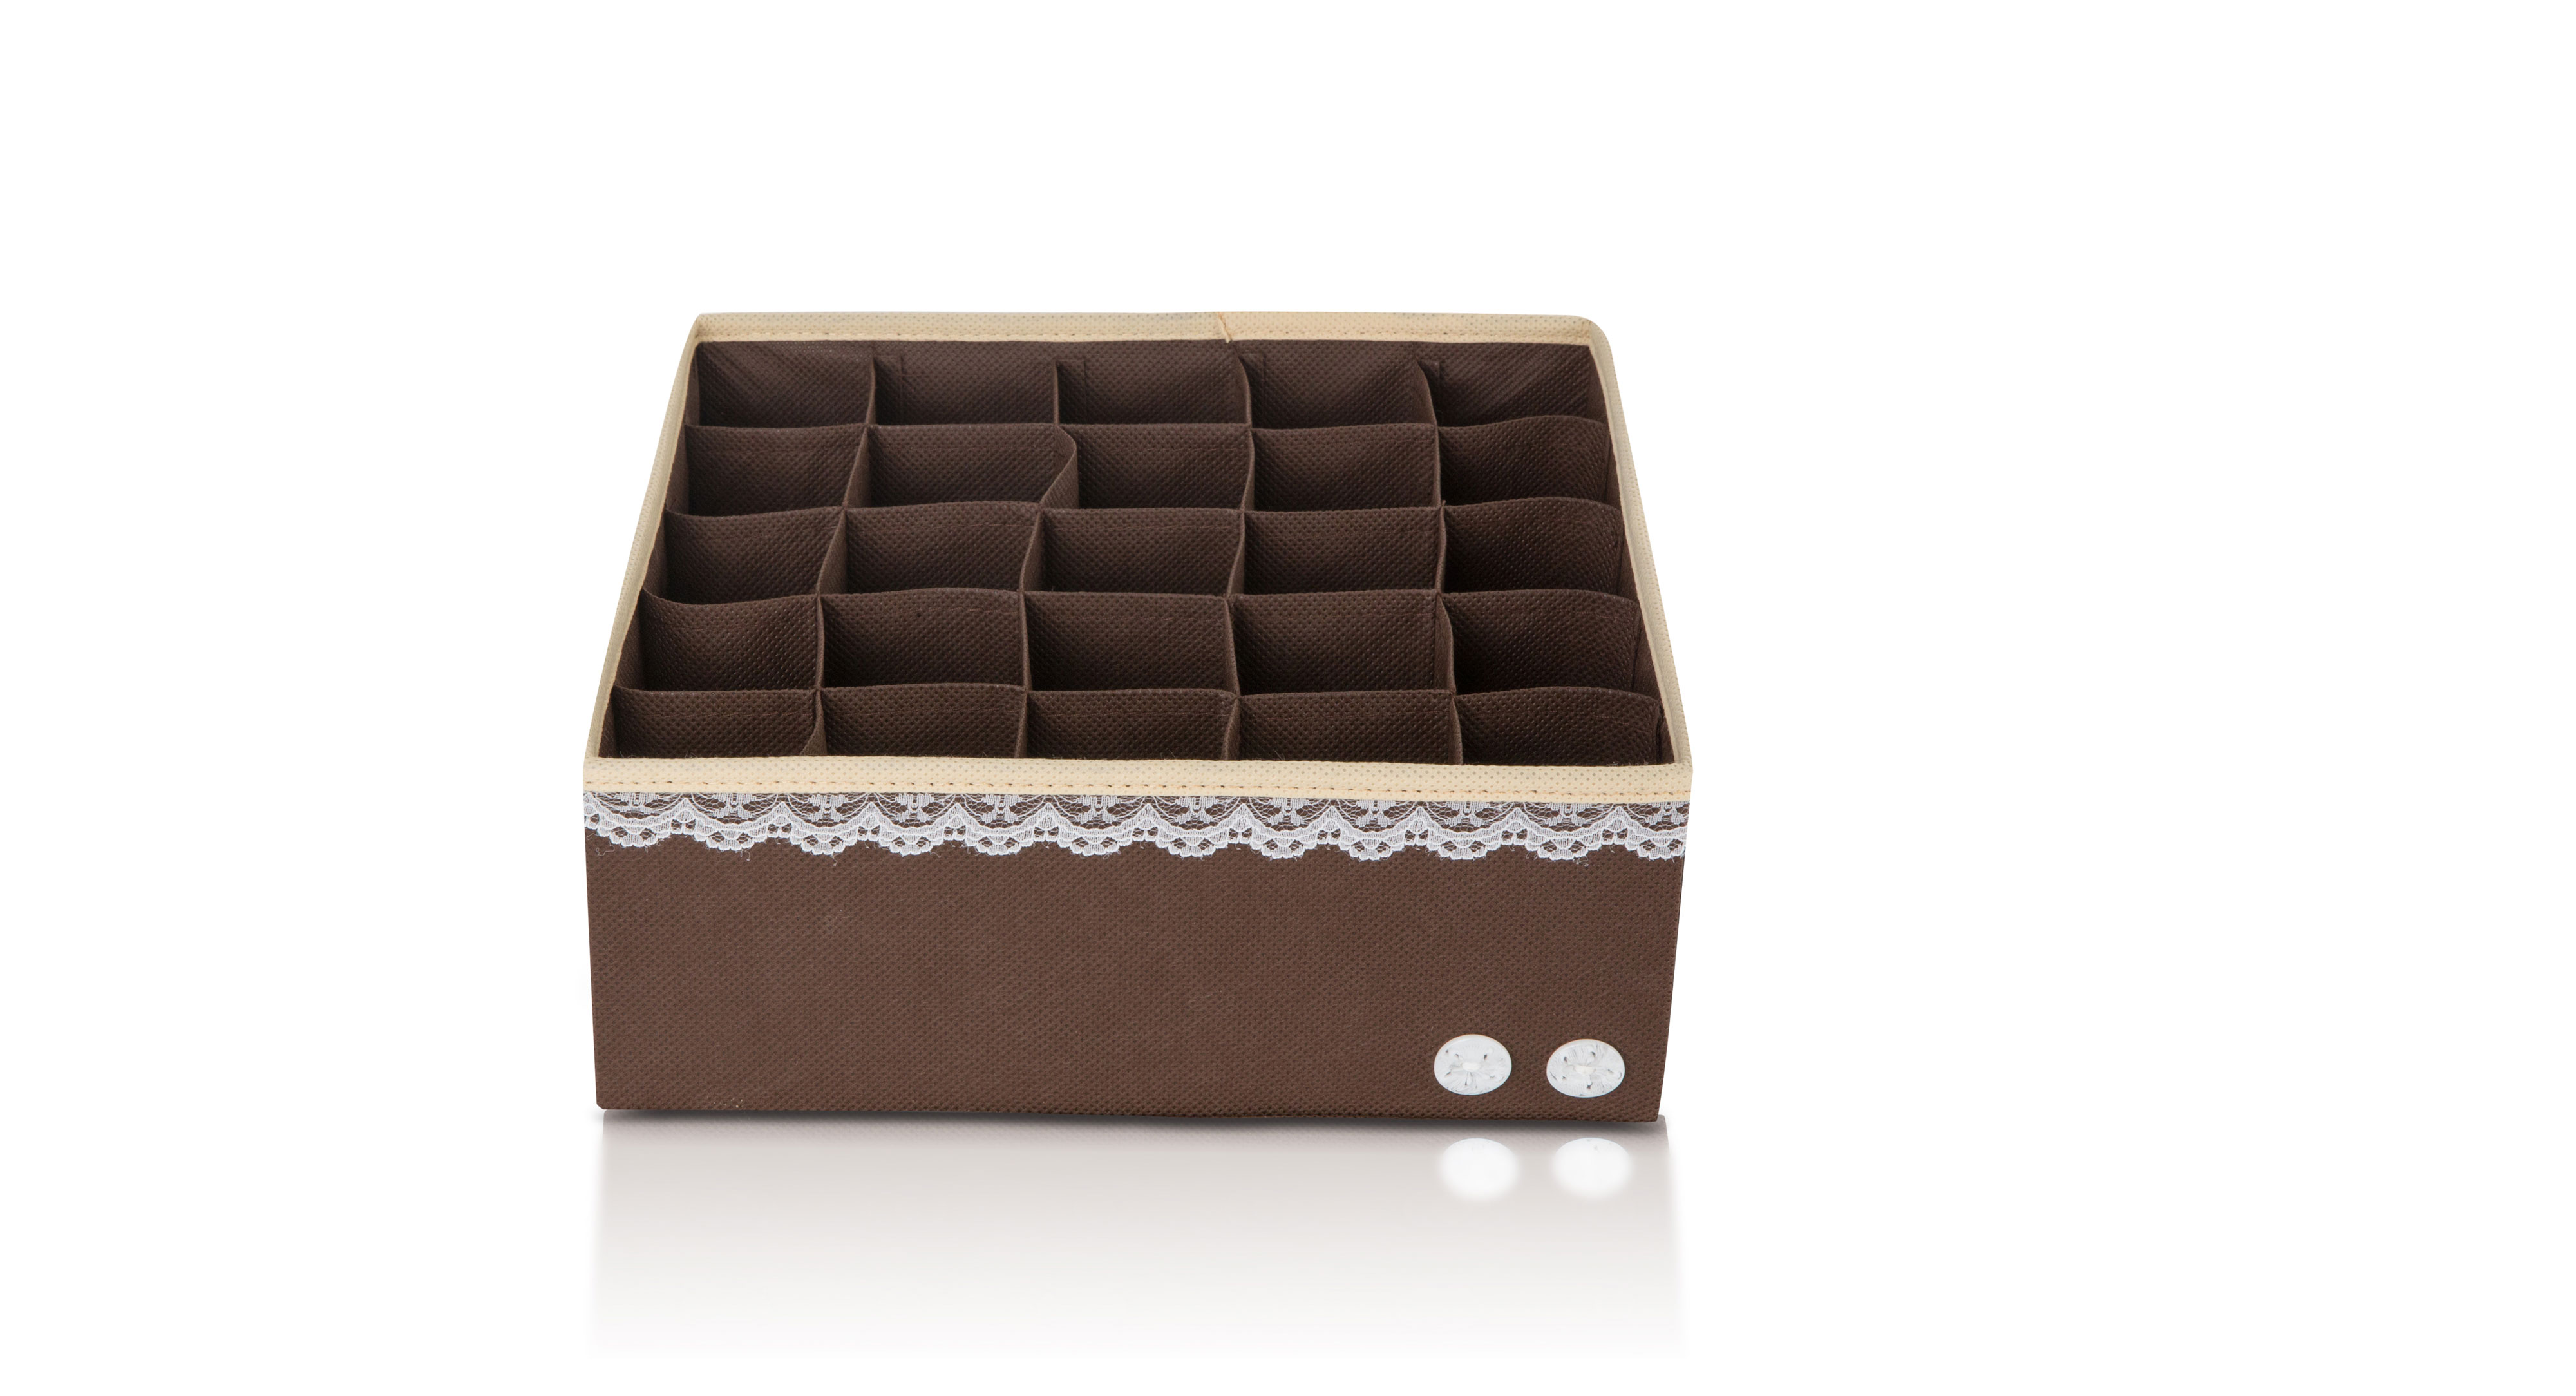 Органайзер для белья (для трусов) "Chocolate Cake" - коробки для хранения